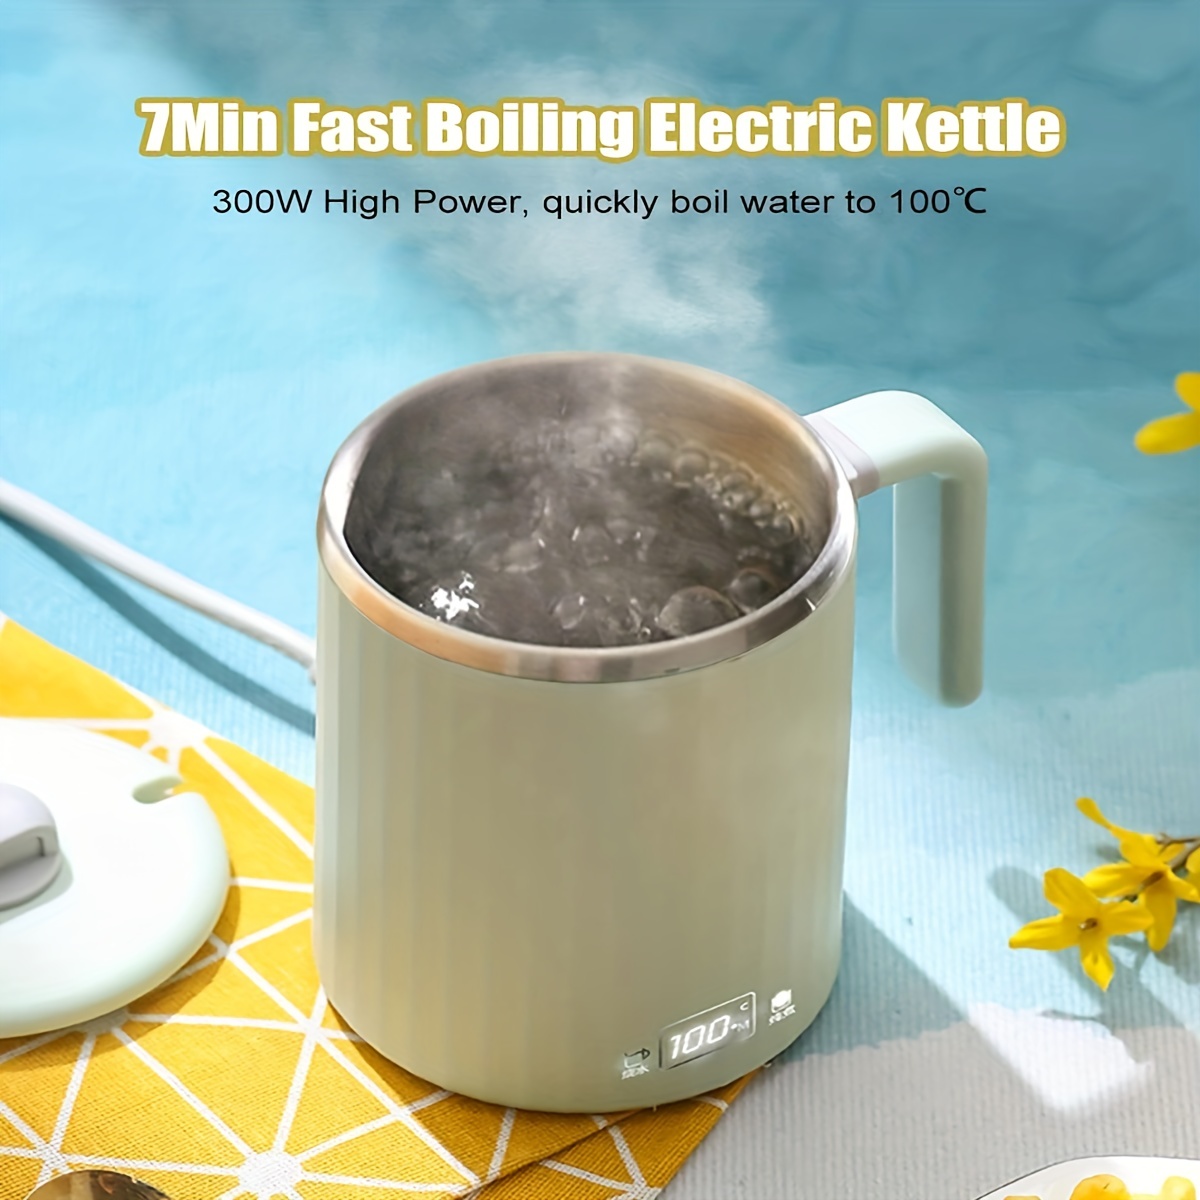 Milk Boil in Electric Kettle